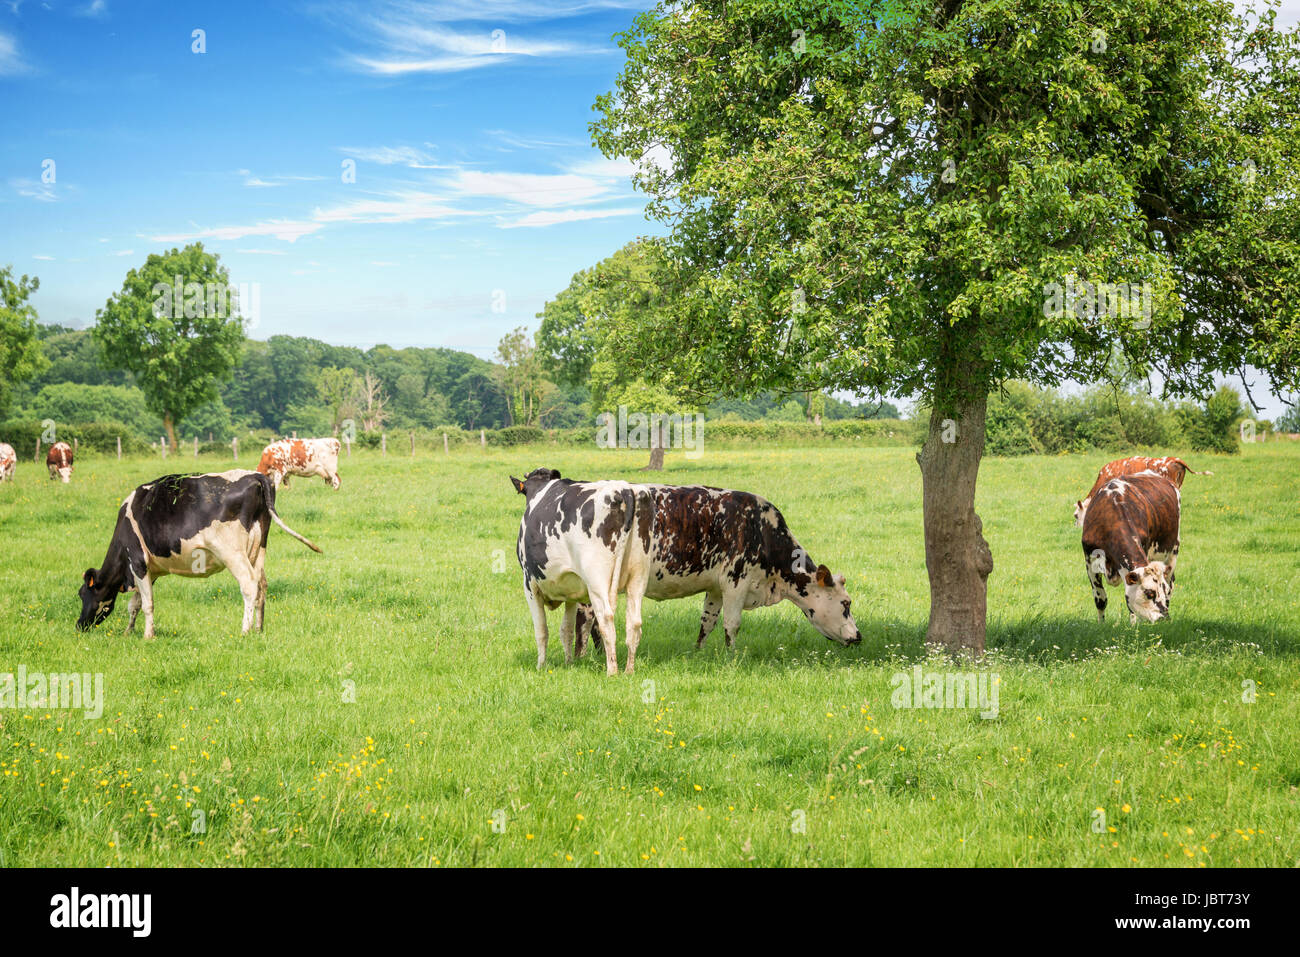 Norman in bianco e nero le mucche al pascolo su erboso campo verde con alberi in una luminosa giornata di sole in Normandia, Francia. Estate paesaggio di campagna e pastu Foto Stock